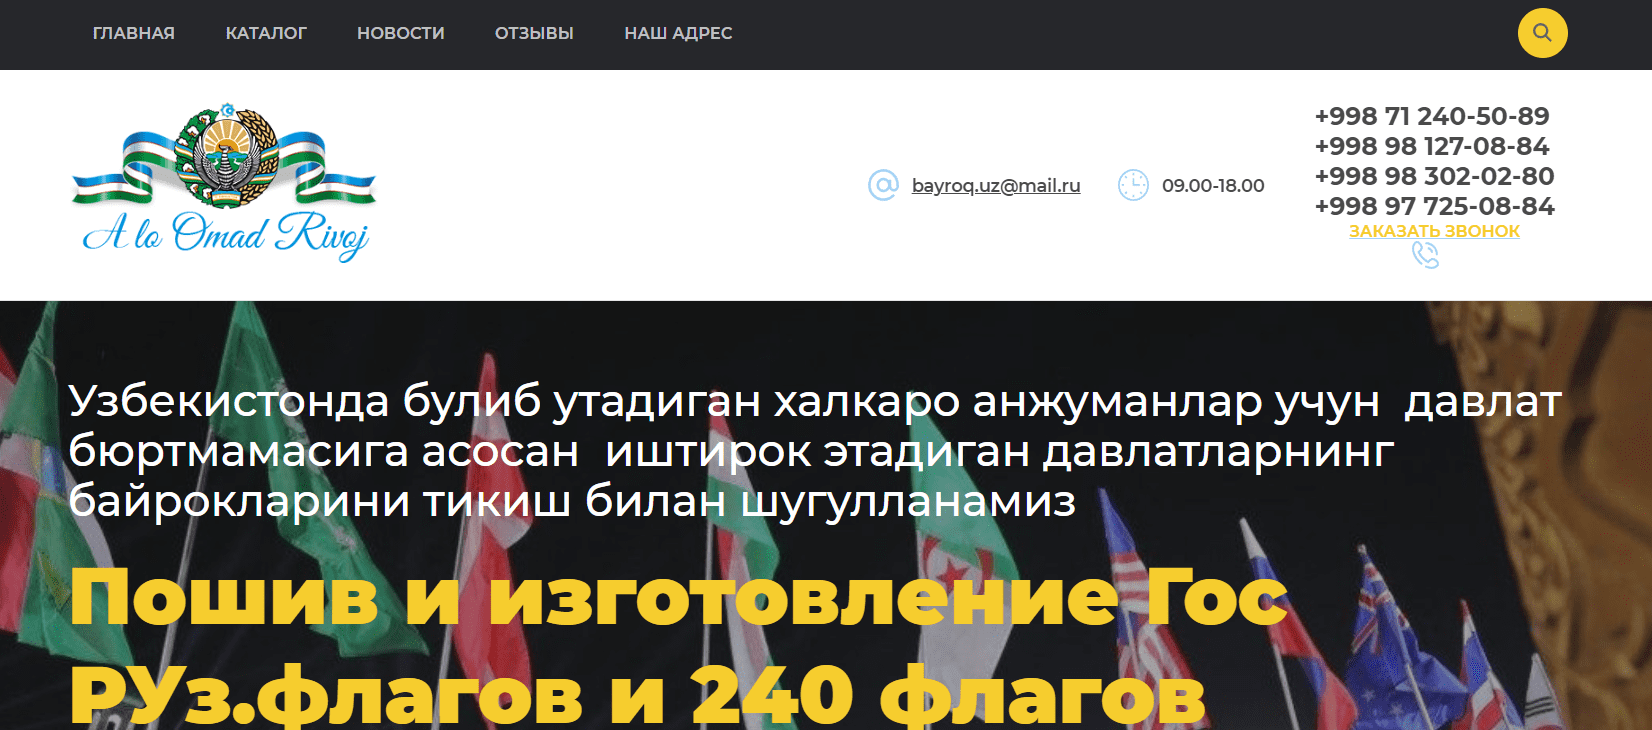 Пошив и изготовление Гос РУз.флагов (bayroquz.uz) - официальный сайт